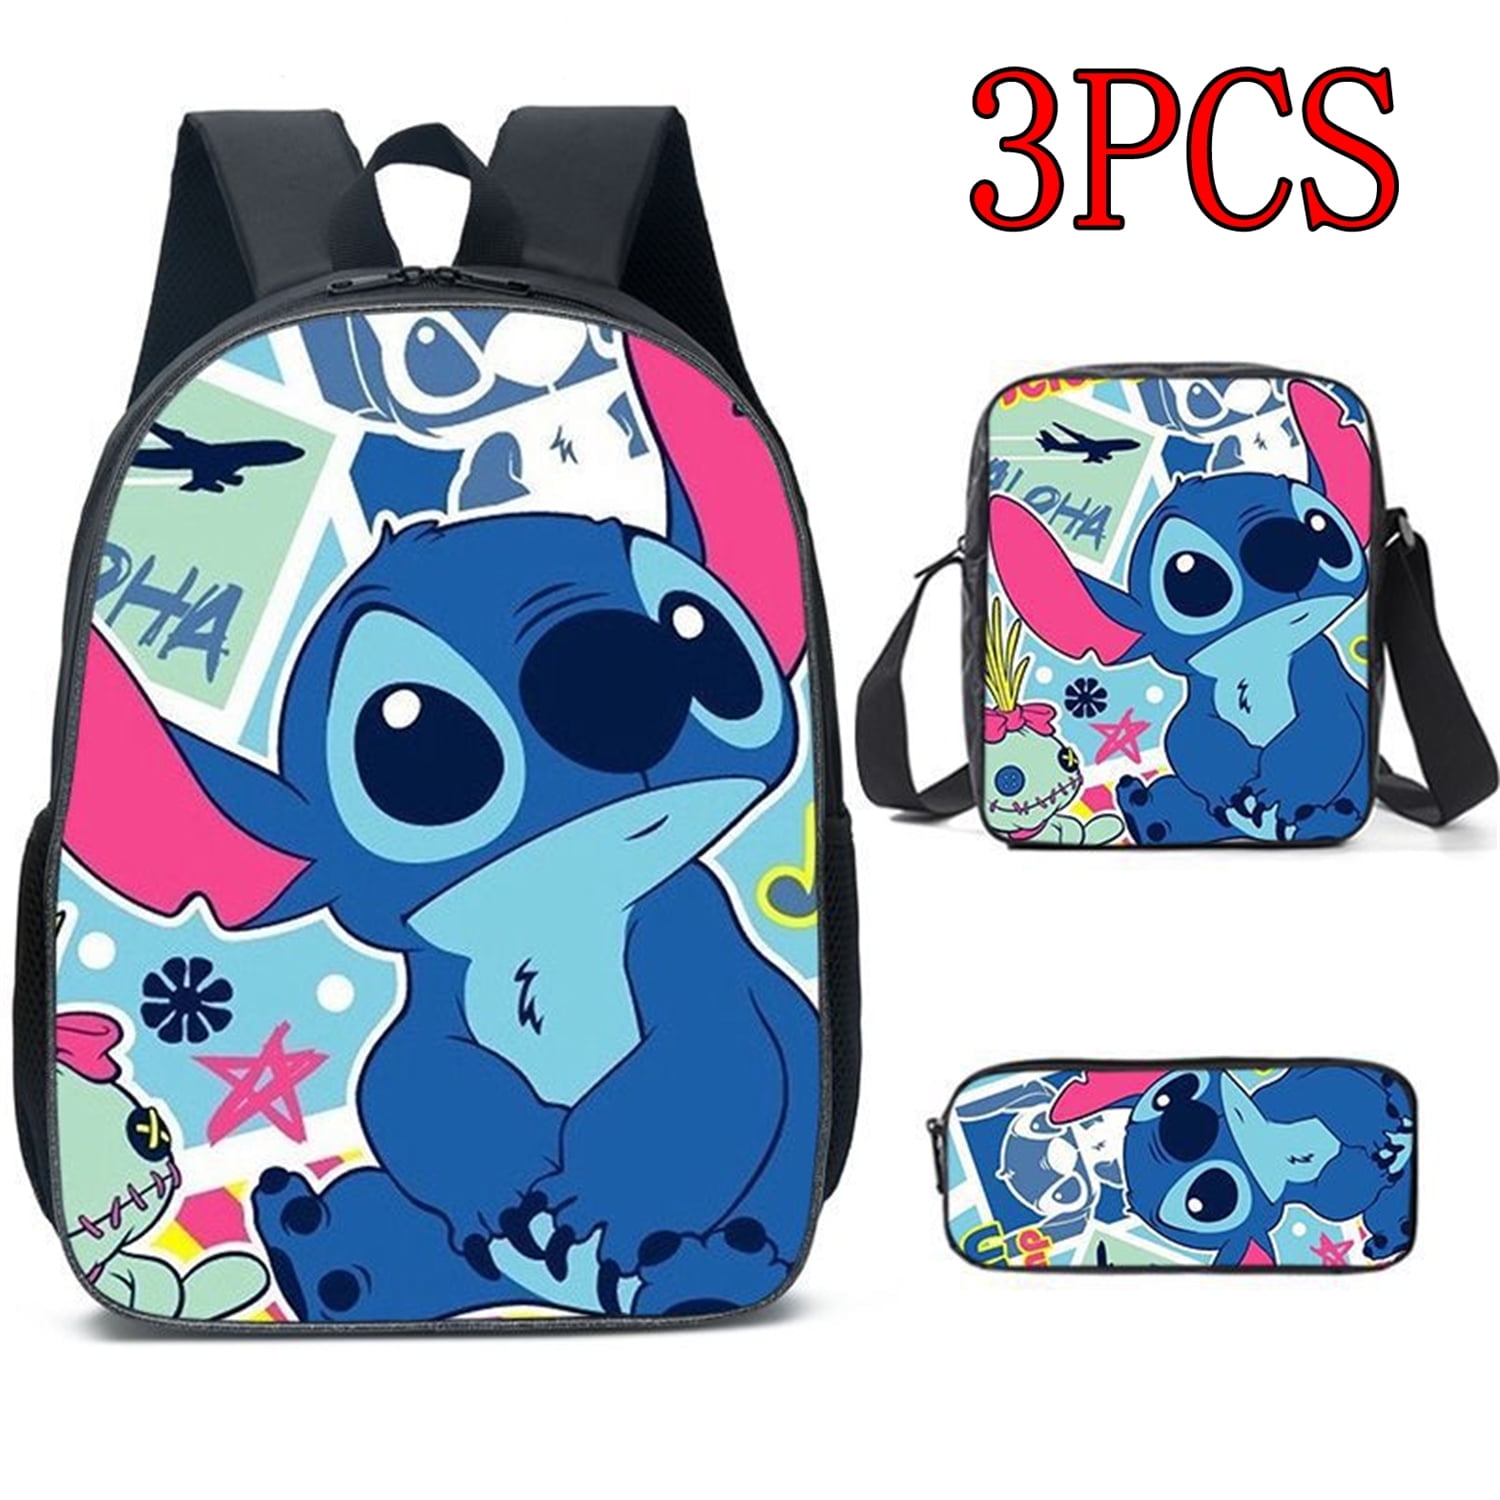 Conjunto de mochila Stitch - 3pcs Multi-pocket casual Travel School Bag  para adolescentes - mochilas de alta calidad, ideal para mujeres y hombres